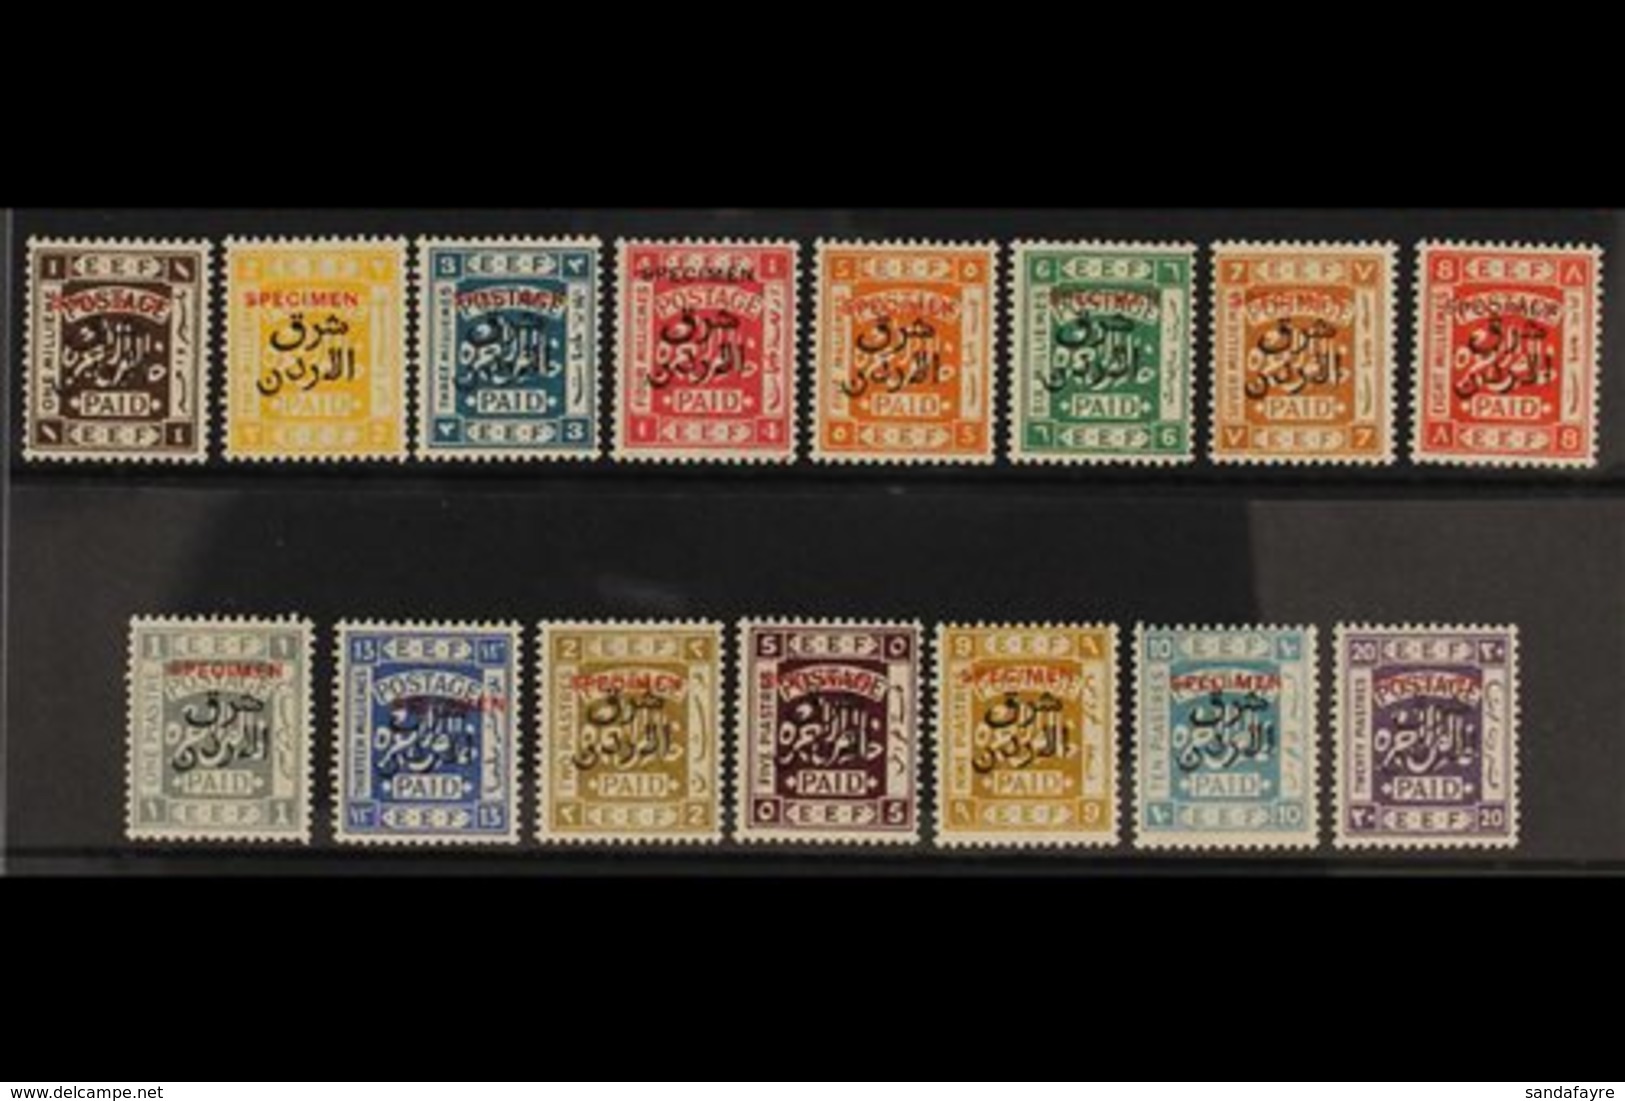 1925-26 "East Of The Jordan" Overprints On Palestine Overprinted "SPECIMEN" Complete Set, SG 143s/57s, Very Fine Mint, V - Jordanien